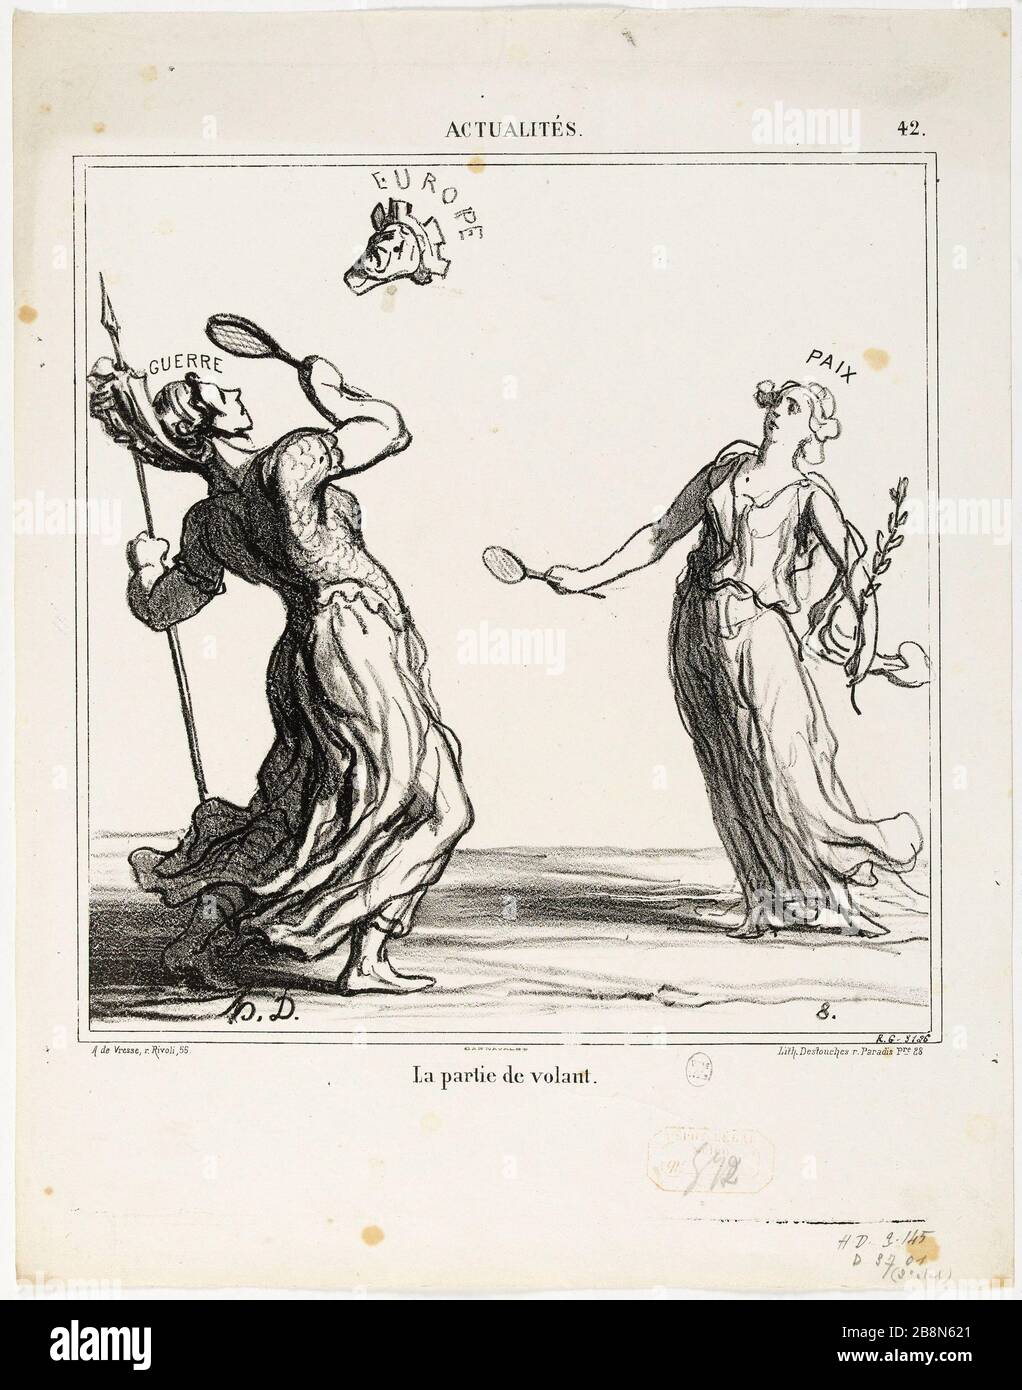 News # 42: The part of the wheel Honoré Daumier (1808-1879). 'Actualités n°42 : La partie de volant'. Paris, musée Carnavalet. Stock Photo